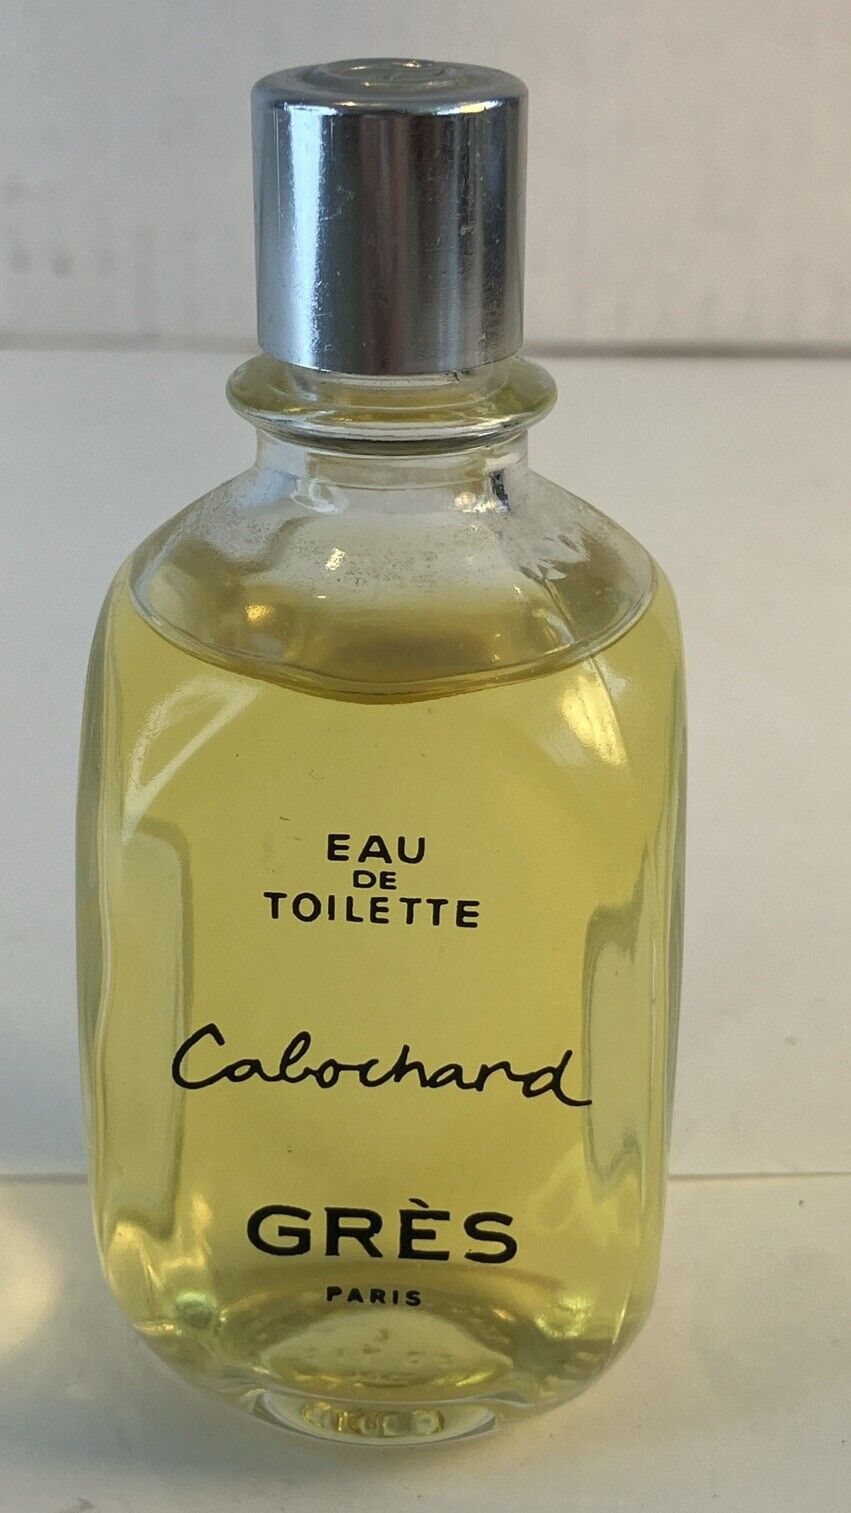 Gres Paris Cabochard Eau de Toilette Perfume Splash 1 oz  Full  Bottle